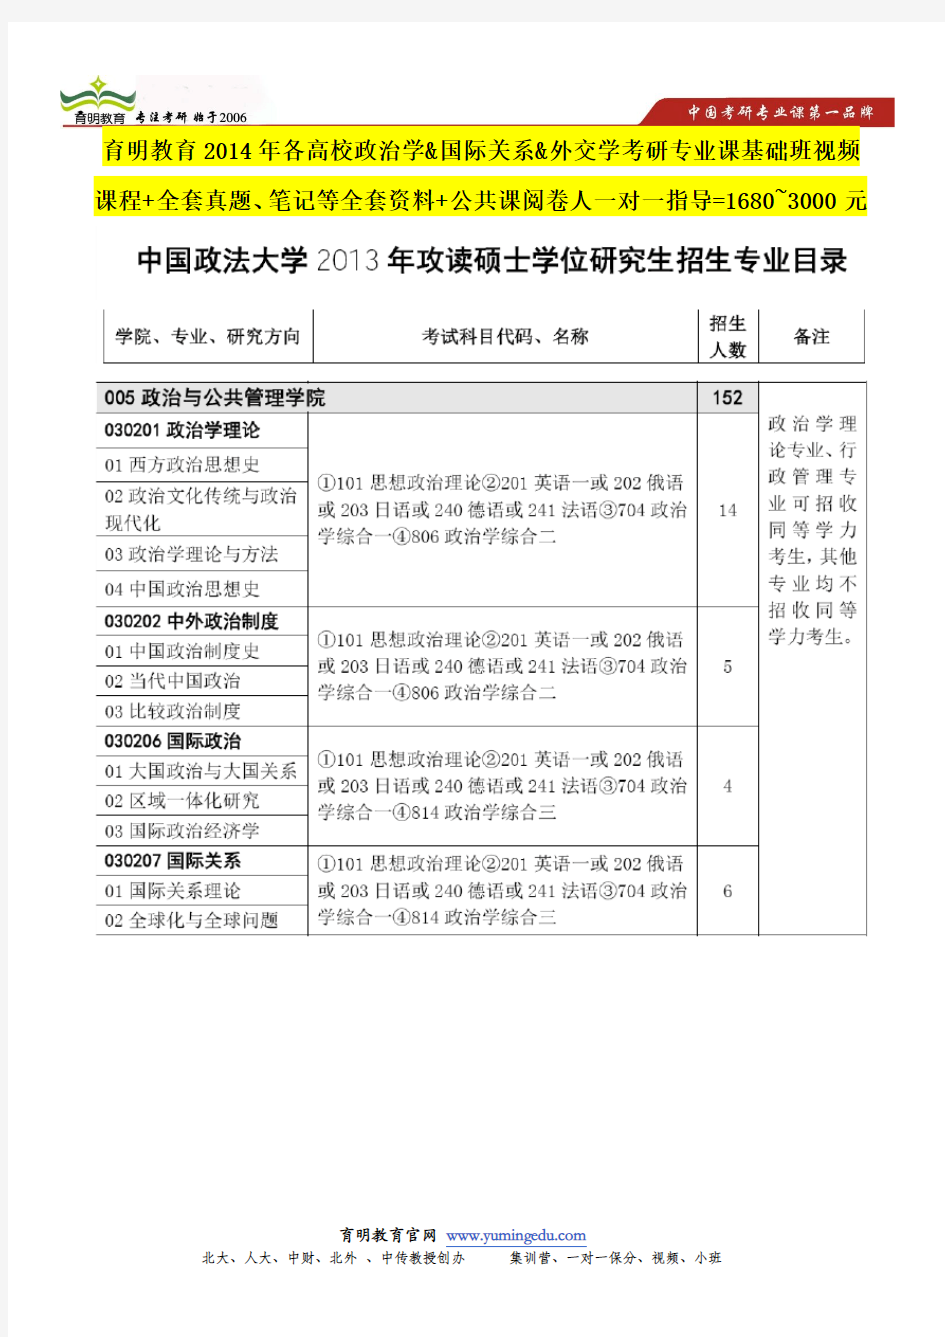 中国政法大学国际政治考研复试参考书目,笔试面试复习内容及要点